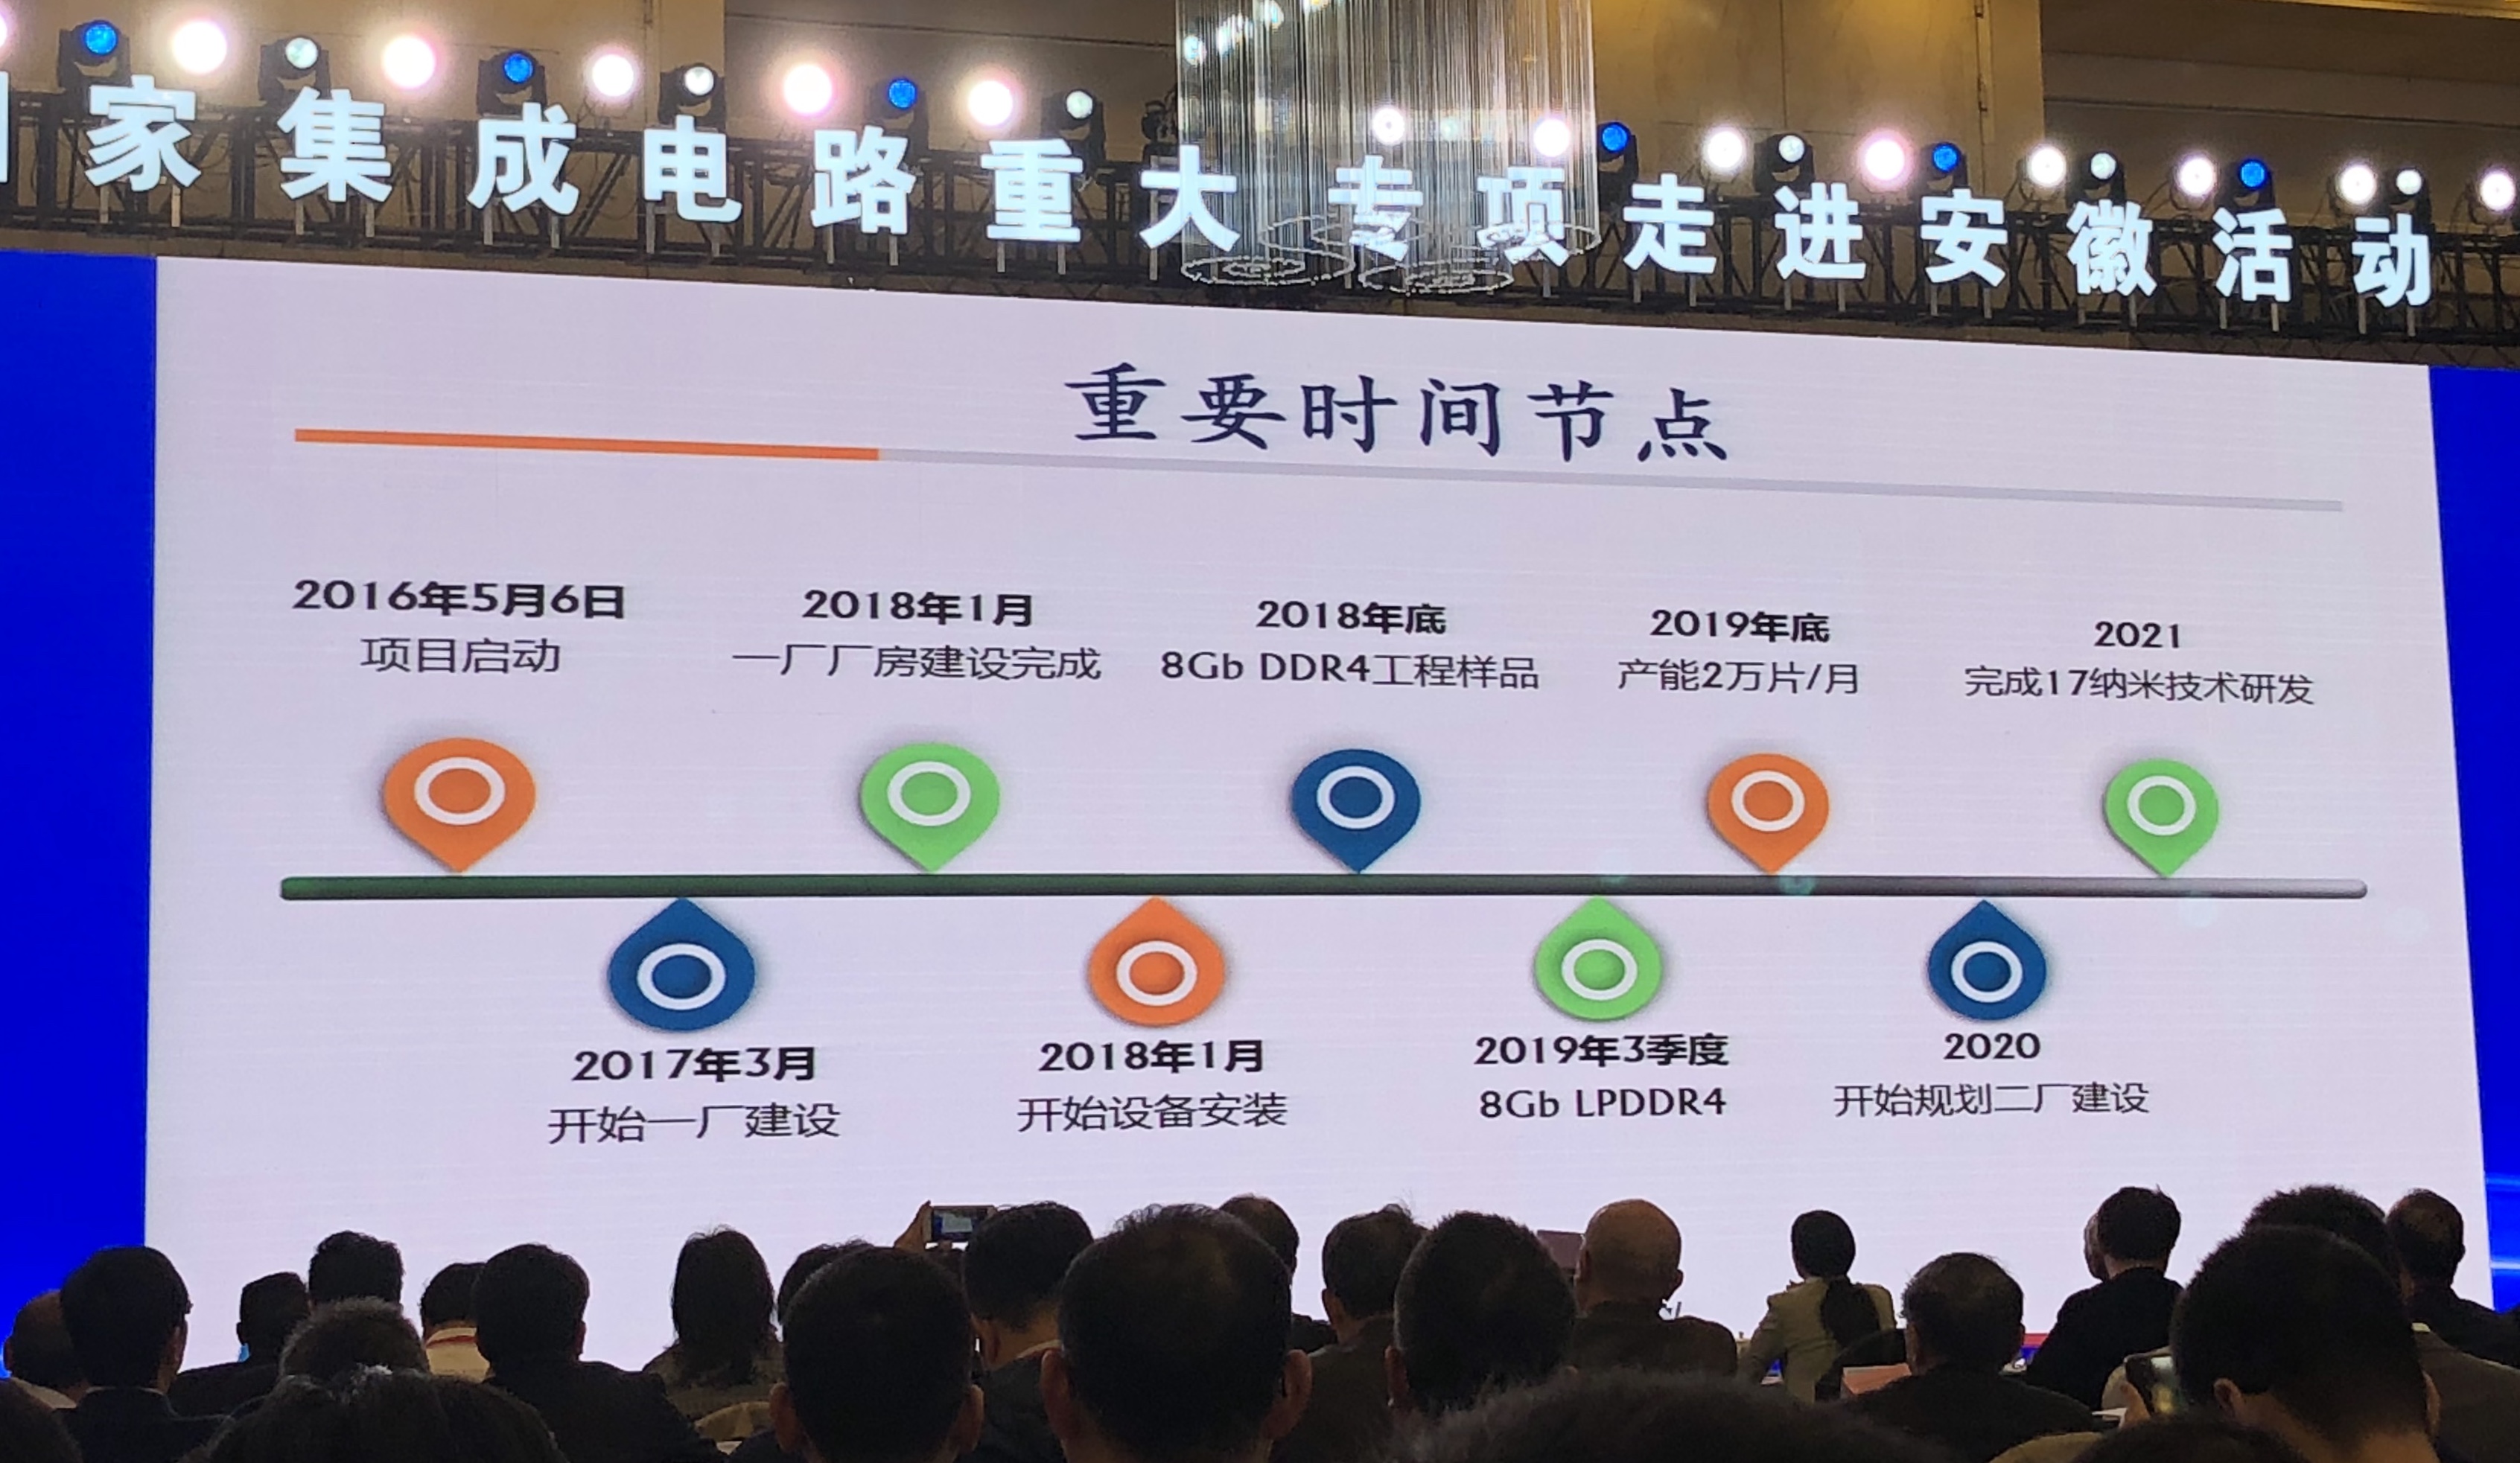 合肥长鑫年底生产8Gb DDR4工程样品,明年底产能2万片/月